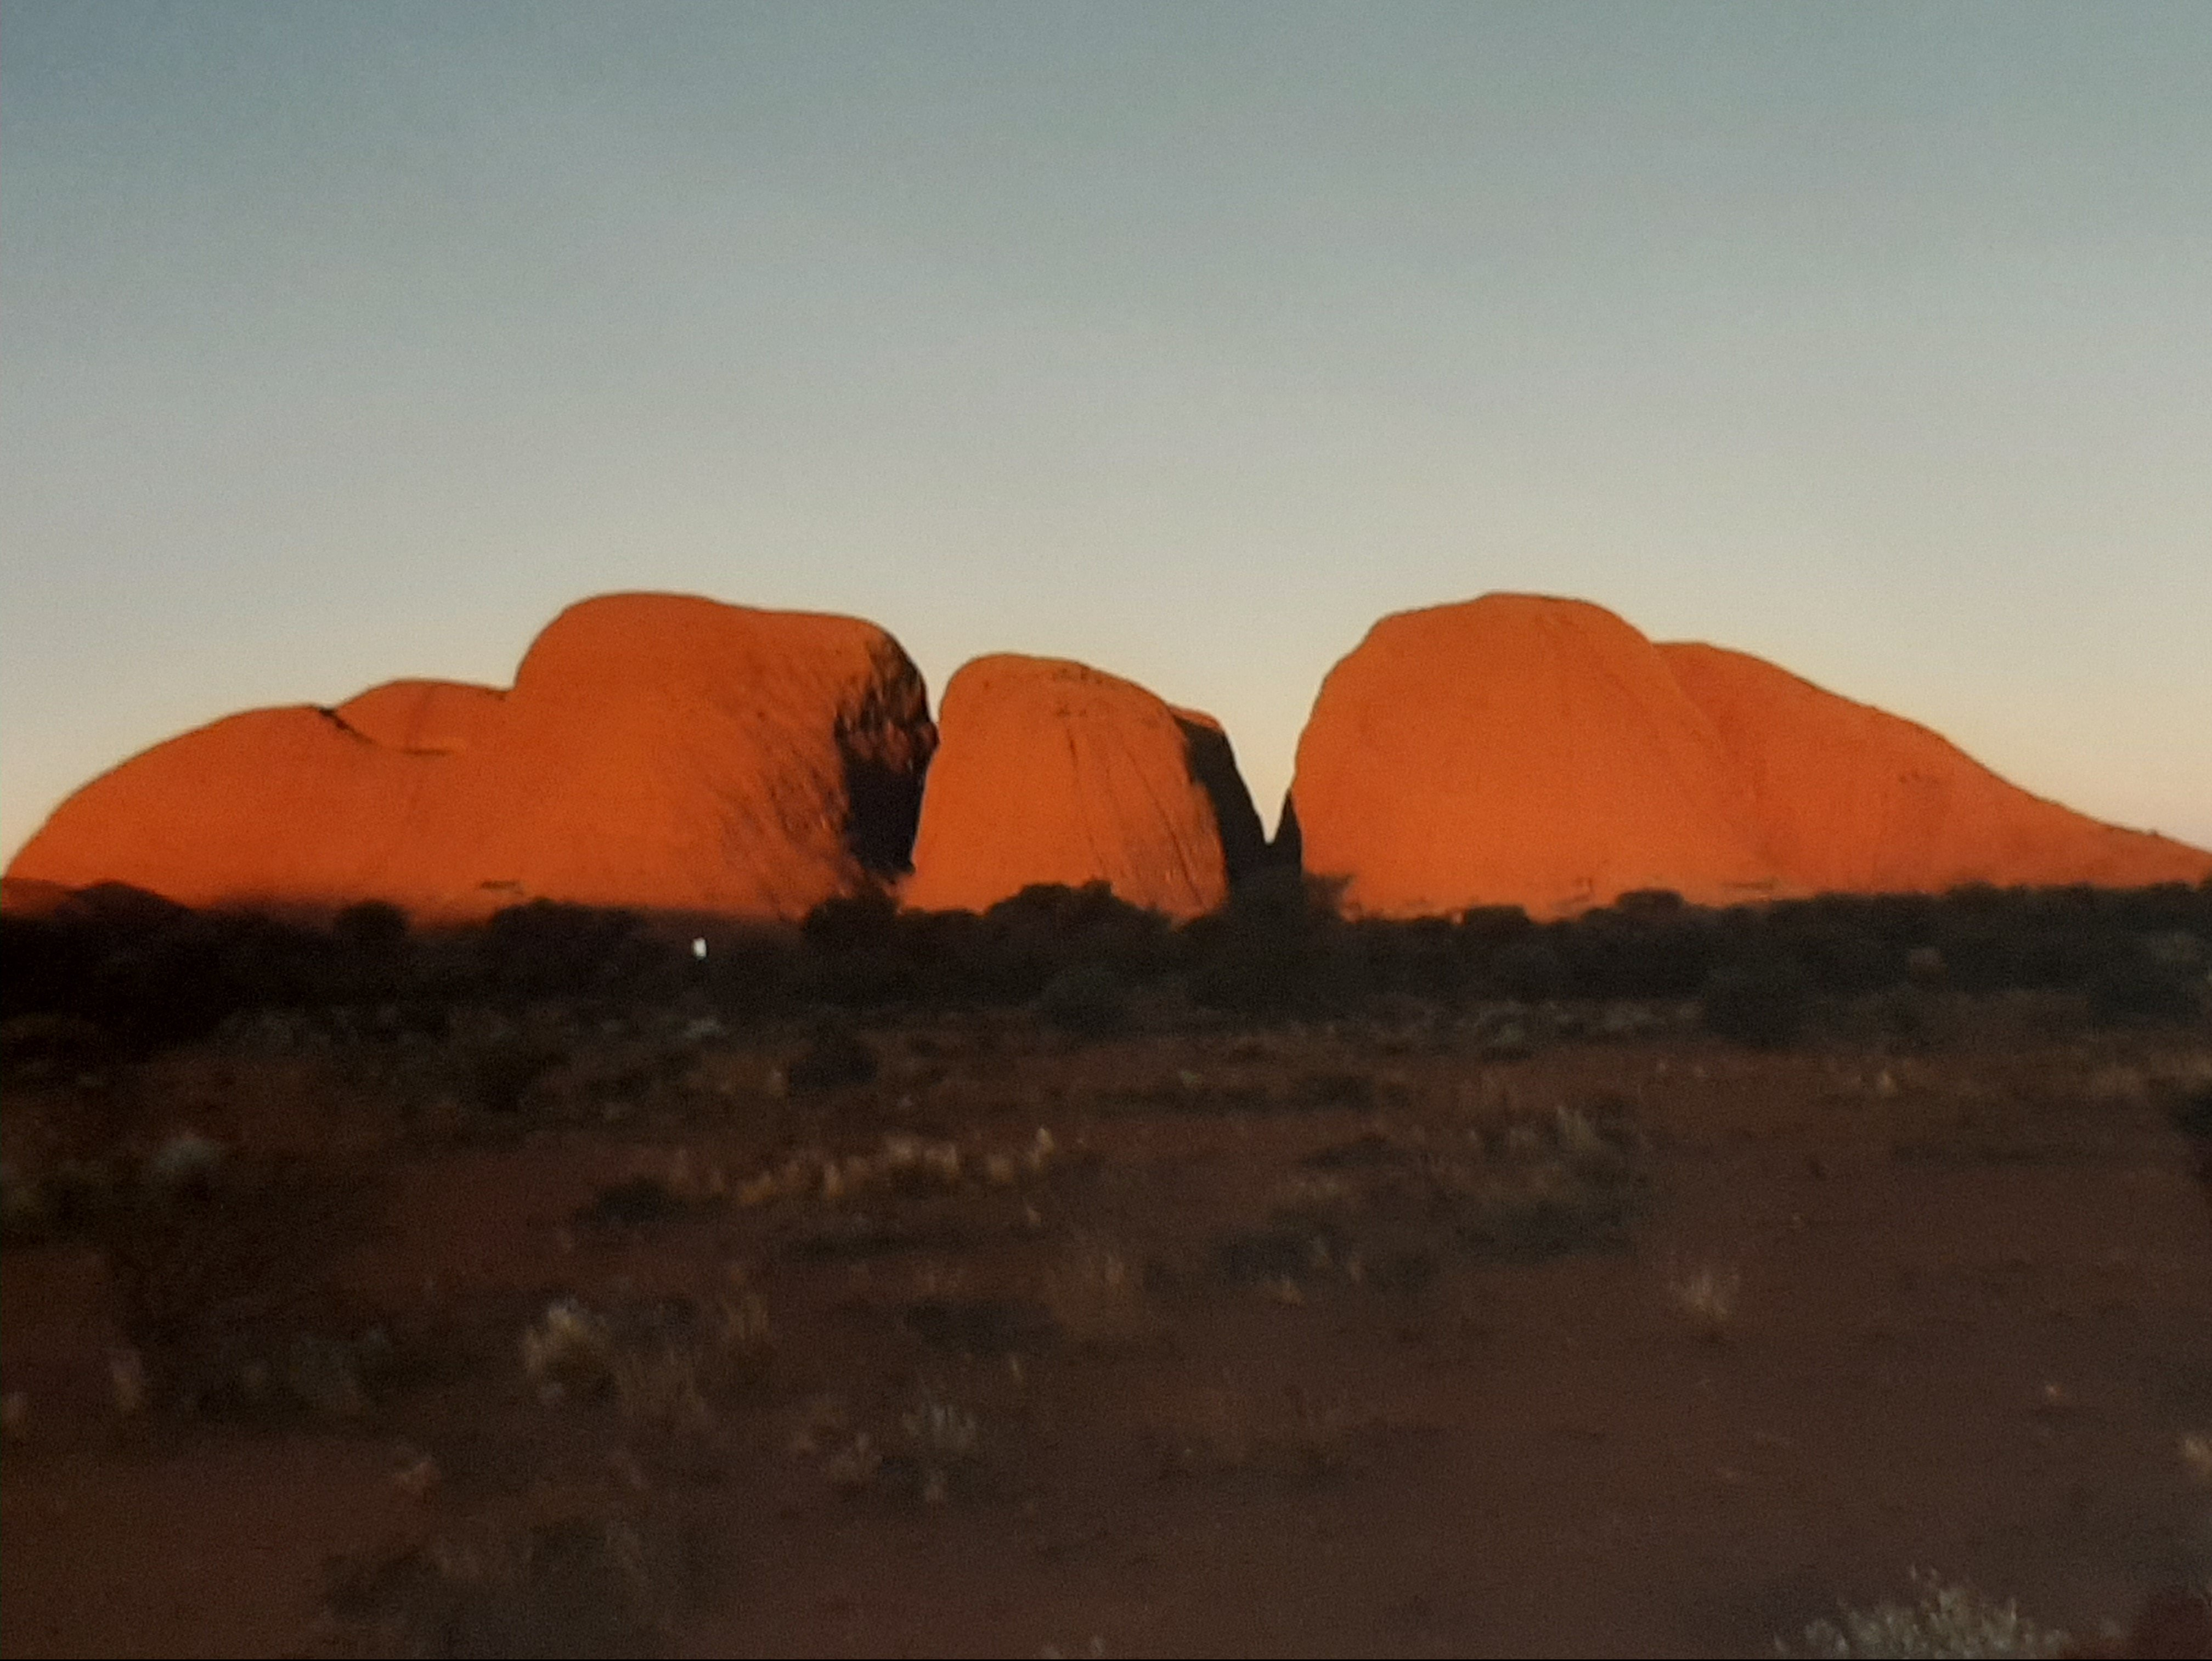 The Olgas - Kata Tjuta - outback - Australia